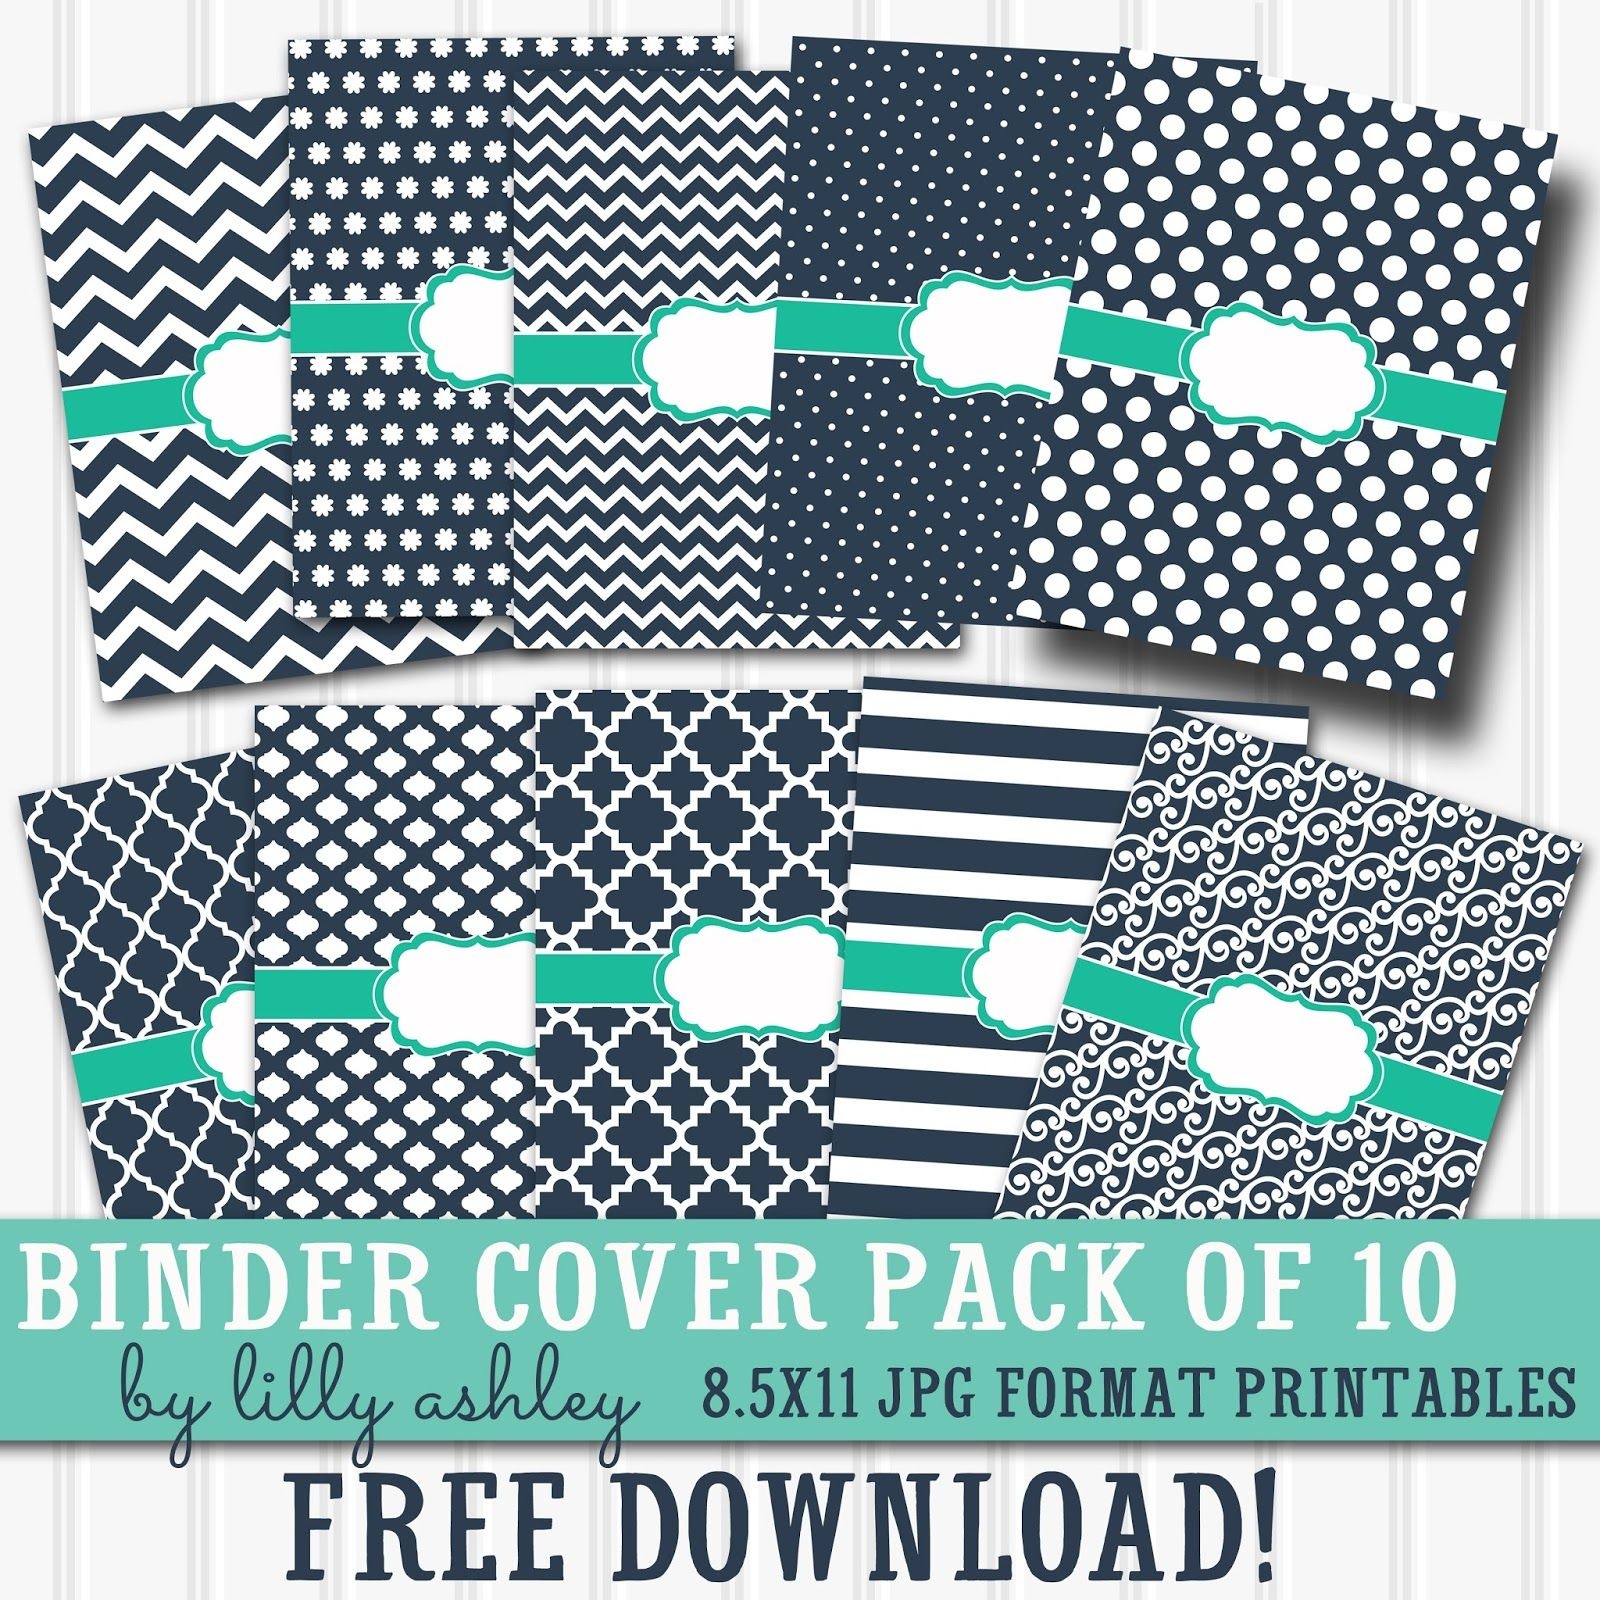 Free Printable Binder Covers Pack Of 10 | Diy School Supplies - Free Editable Printable Binder Covers